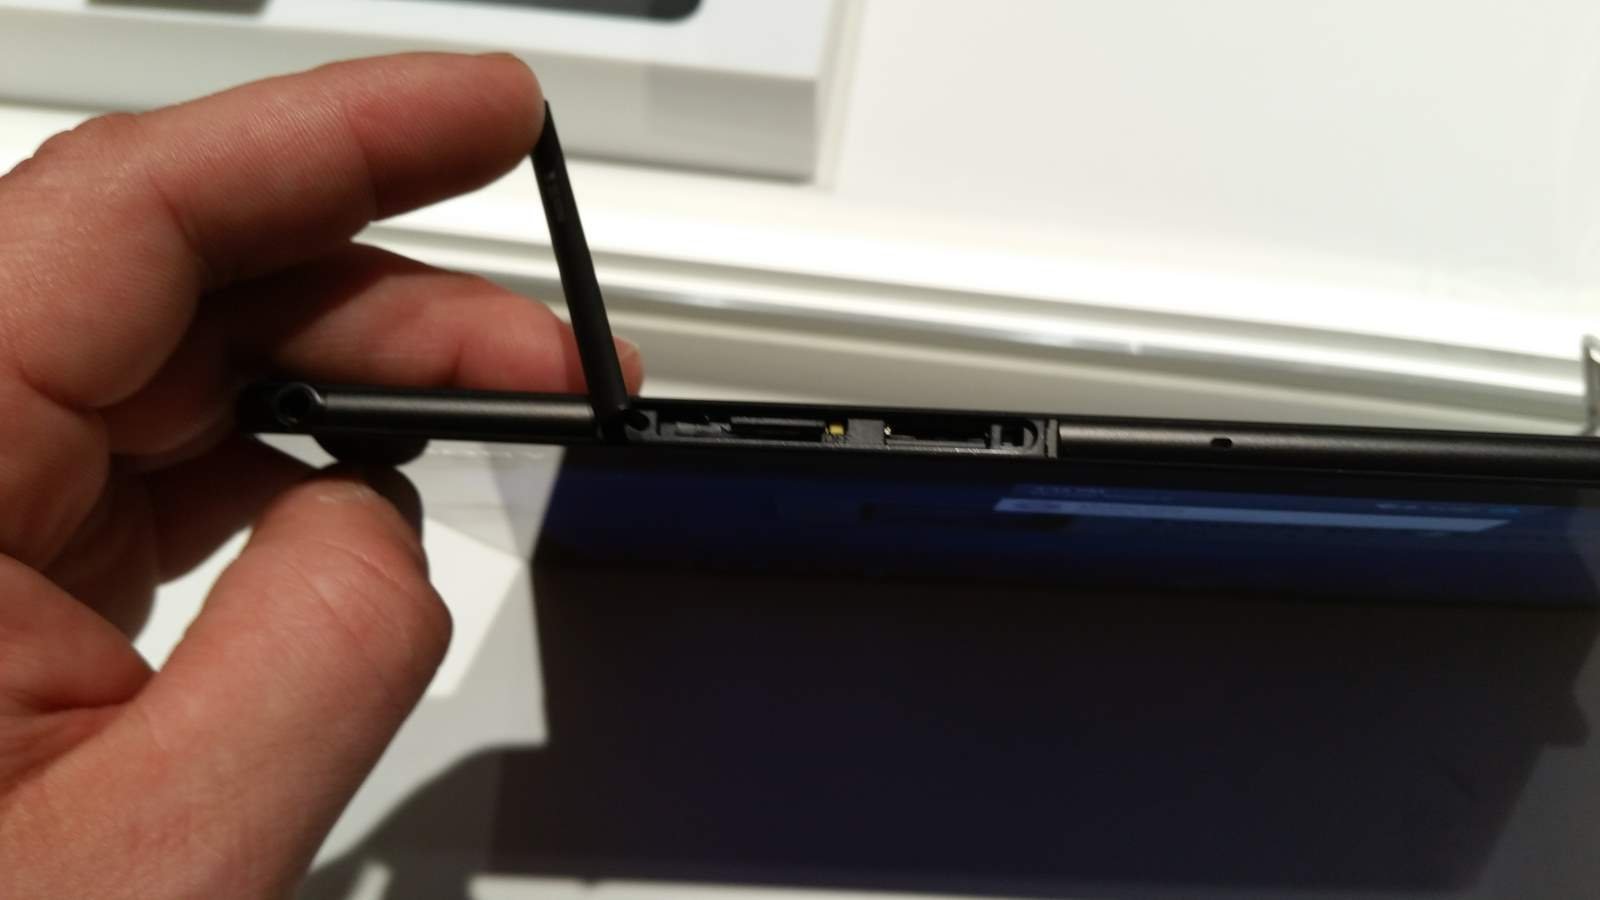 [MWC 2015] Sony dévoile la tablette Xperia Z4 7